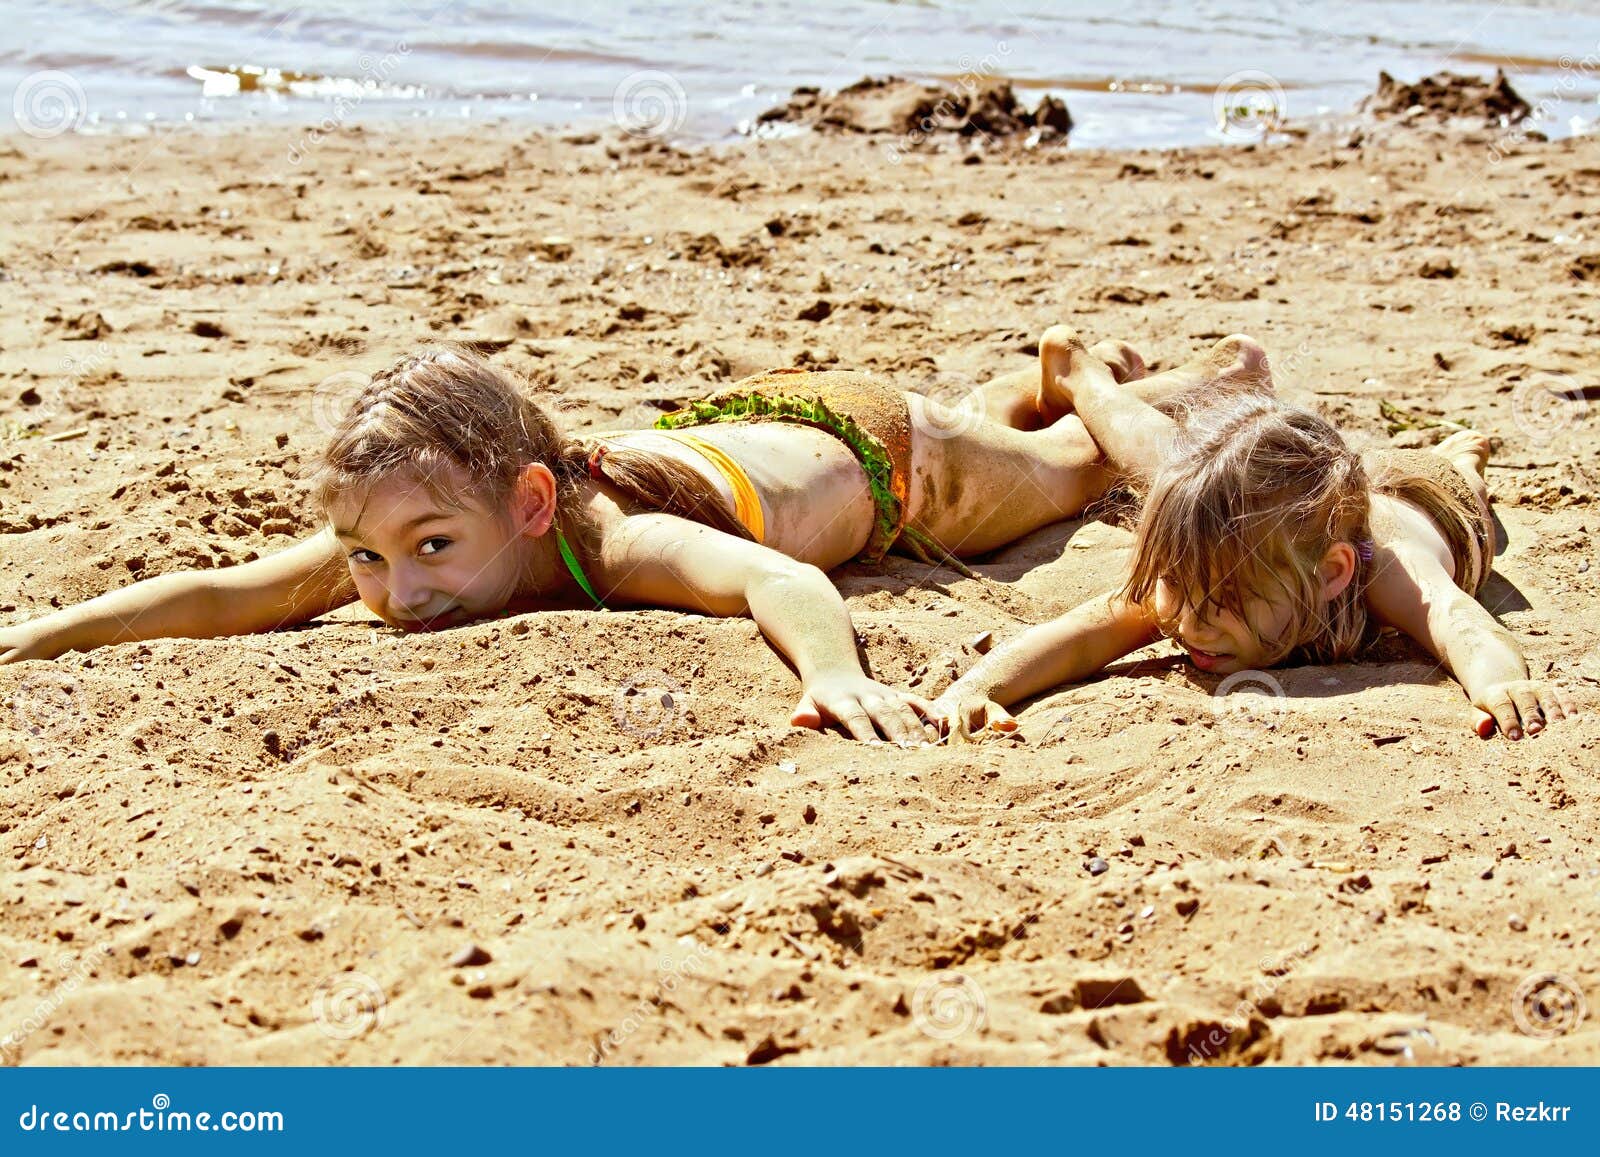 фото дети на голом пляже фото 104